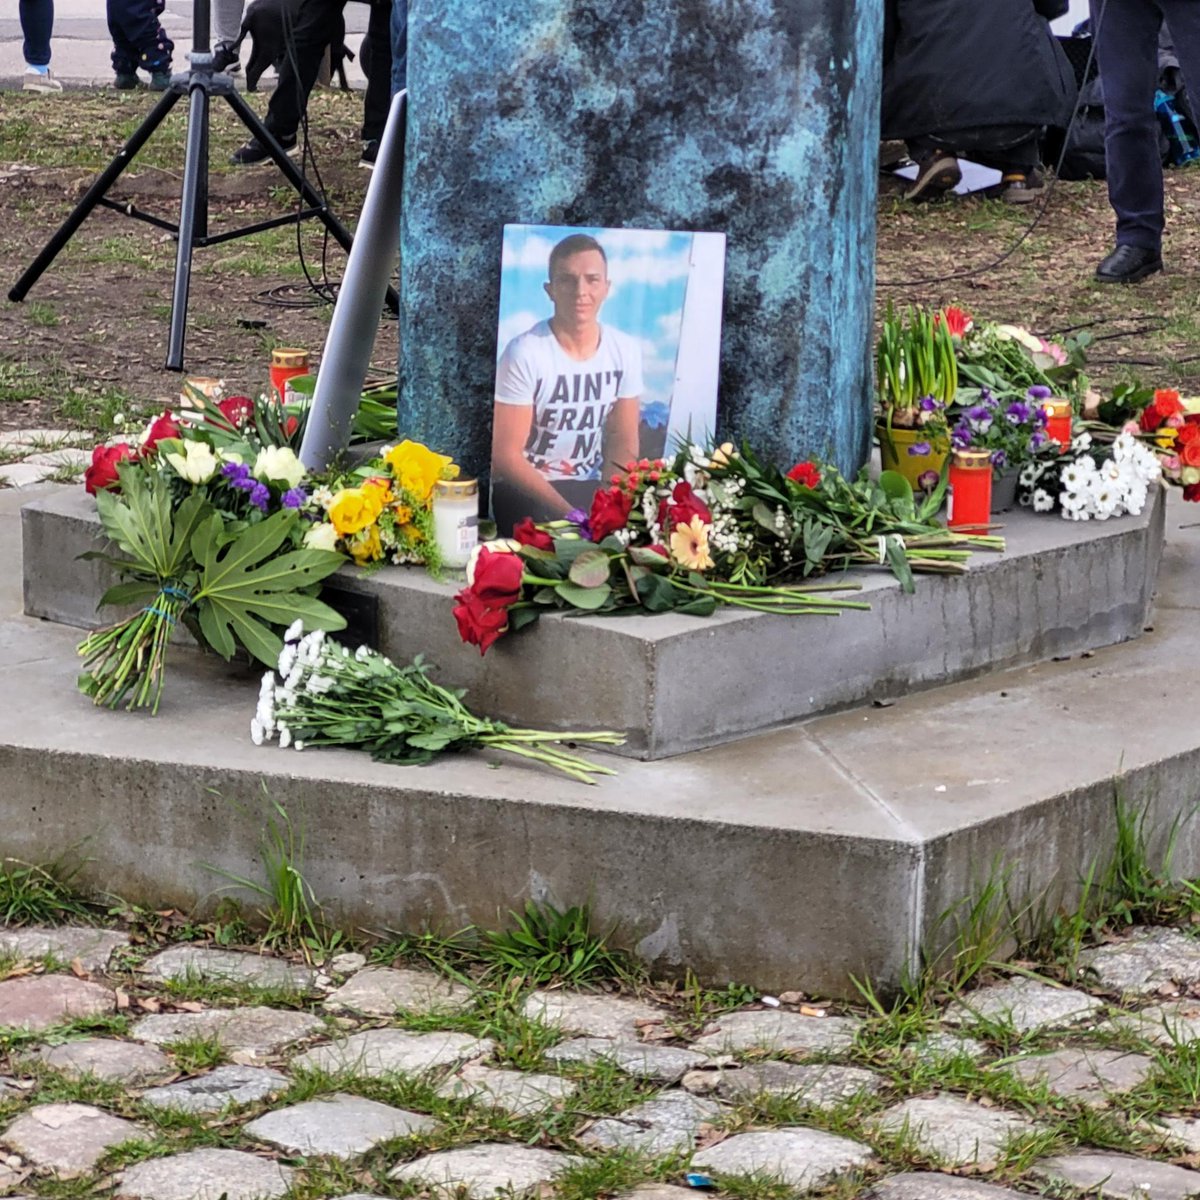 Am 5. April 2012 wurde #BurakBektaş erschossen. Auf offener Straße, mitten in #Neukölln. Seine Ermordung ist bis heute nicht aufgeklärt.
Heute erinnern wir an Ihn und fordern Aufklärung ein! #NeuköllnKomplex 
#PUAnk